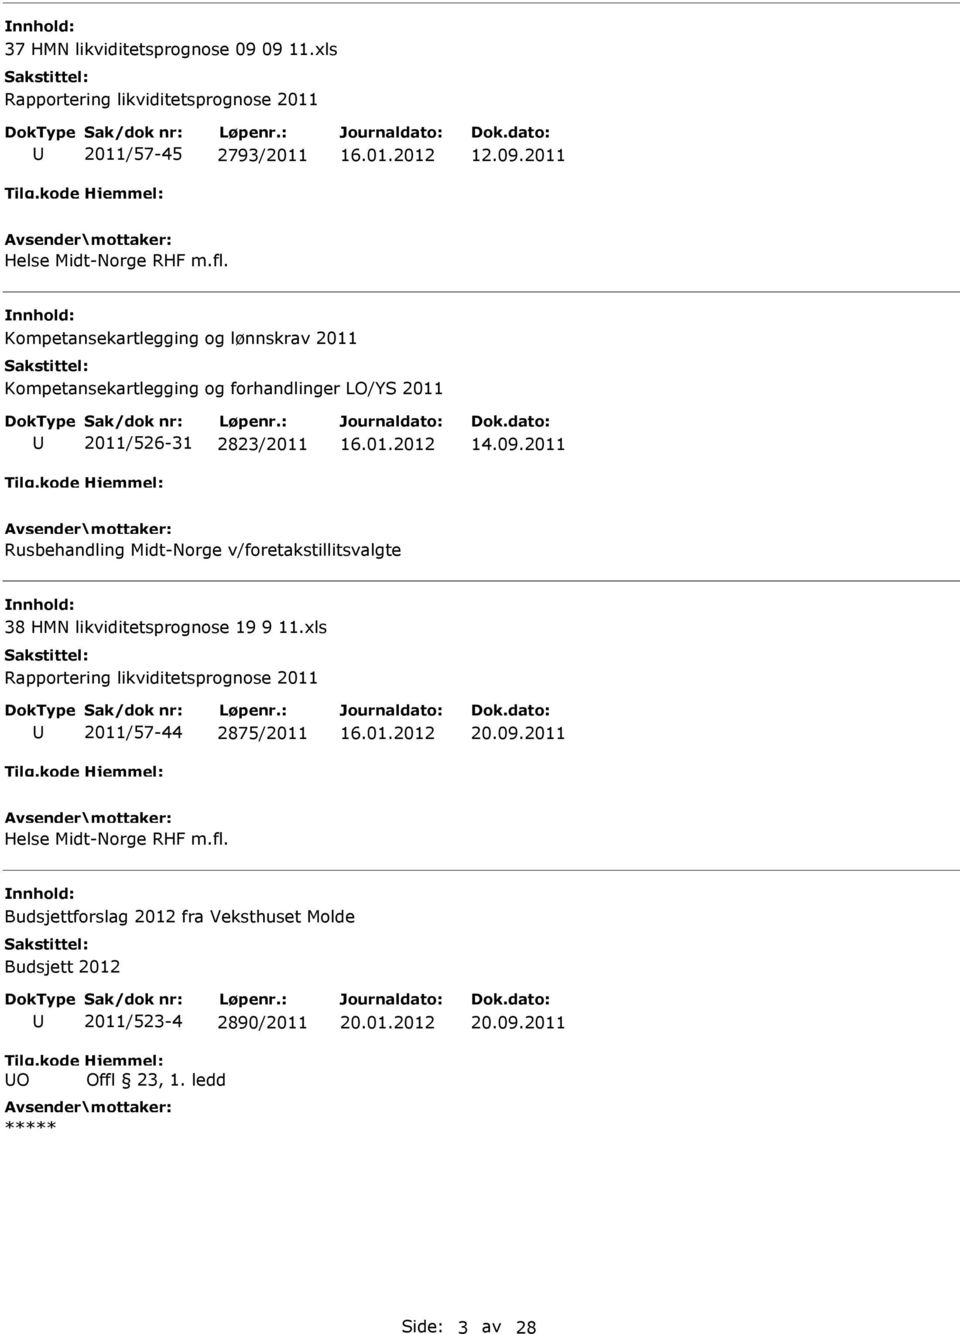 2011 Rusbehandling Midt-Norge v/foretakstillitsvalgte 38 HMN likviditetsprognose 19 9 11.xls 2011/57-44 2875/2011 20.09.